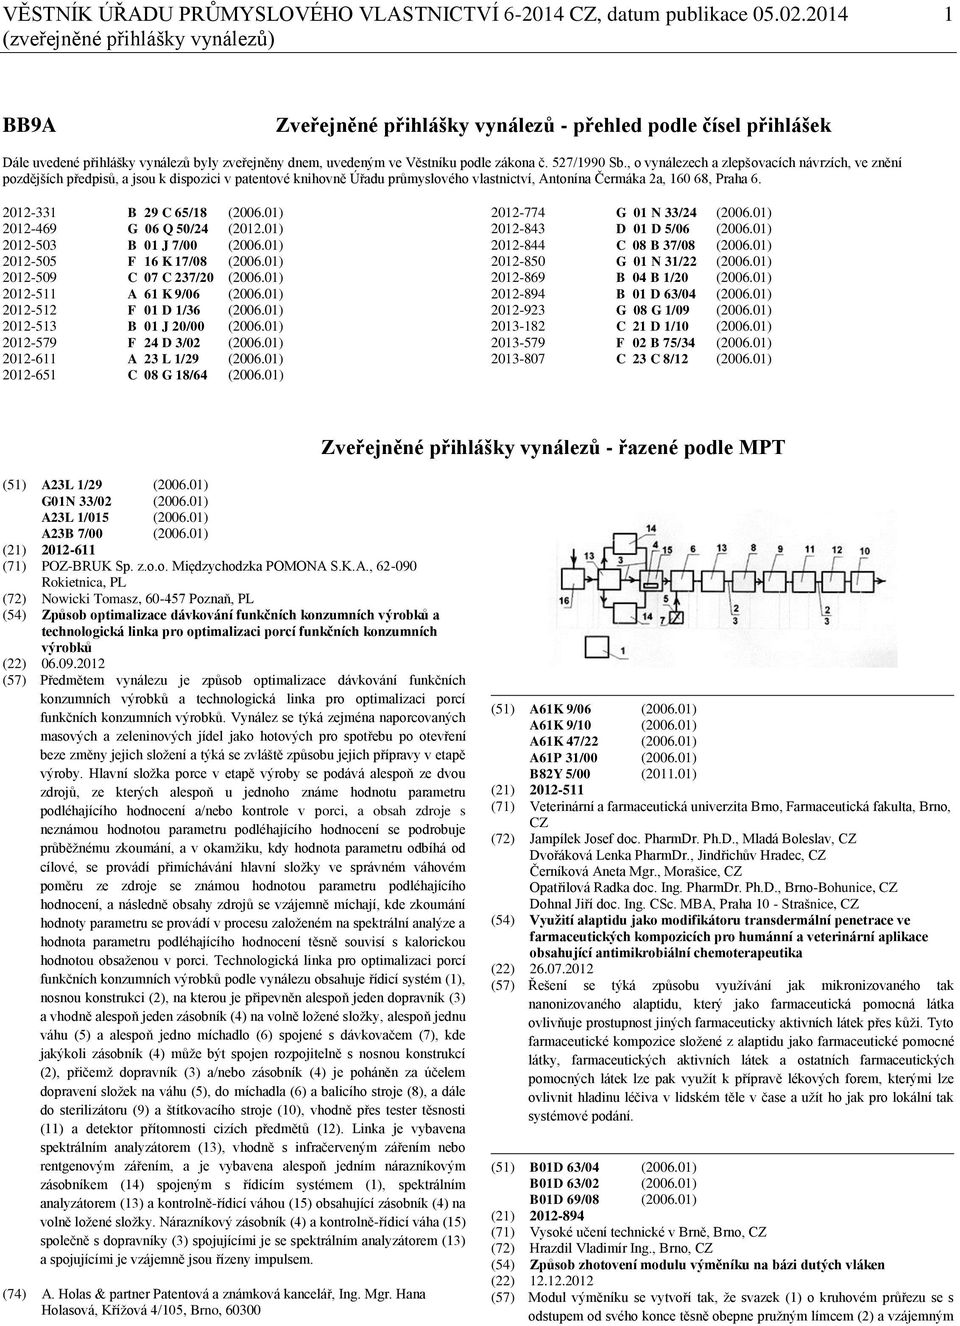 527/1990 Sb., o vynálezech a zlepšovacích návrzích, ve znění pozdějších předpisů, a jsou k dispozici v patentové knihovně Úřadu průmyslového vlastnictví, Antonína Čermáka 2a, 160 68, Praha 6.